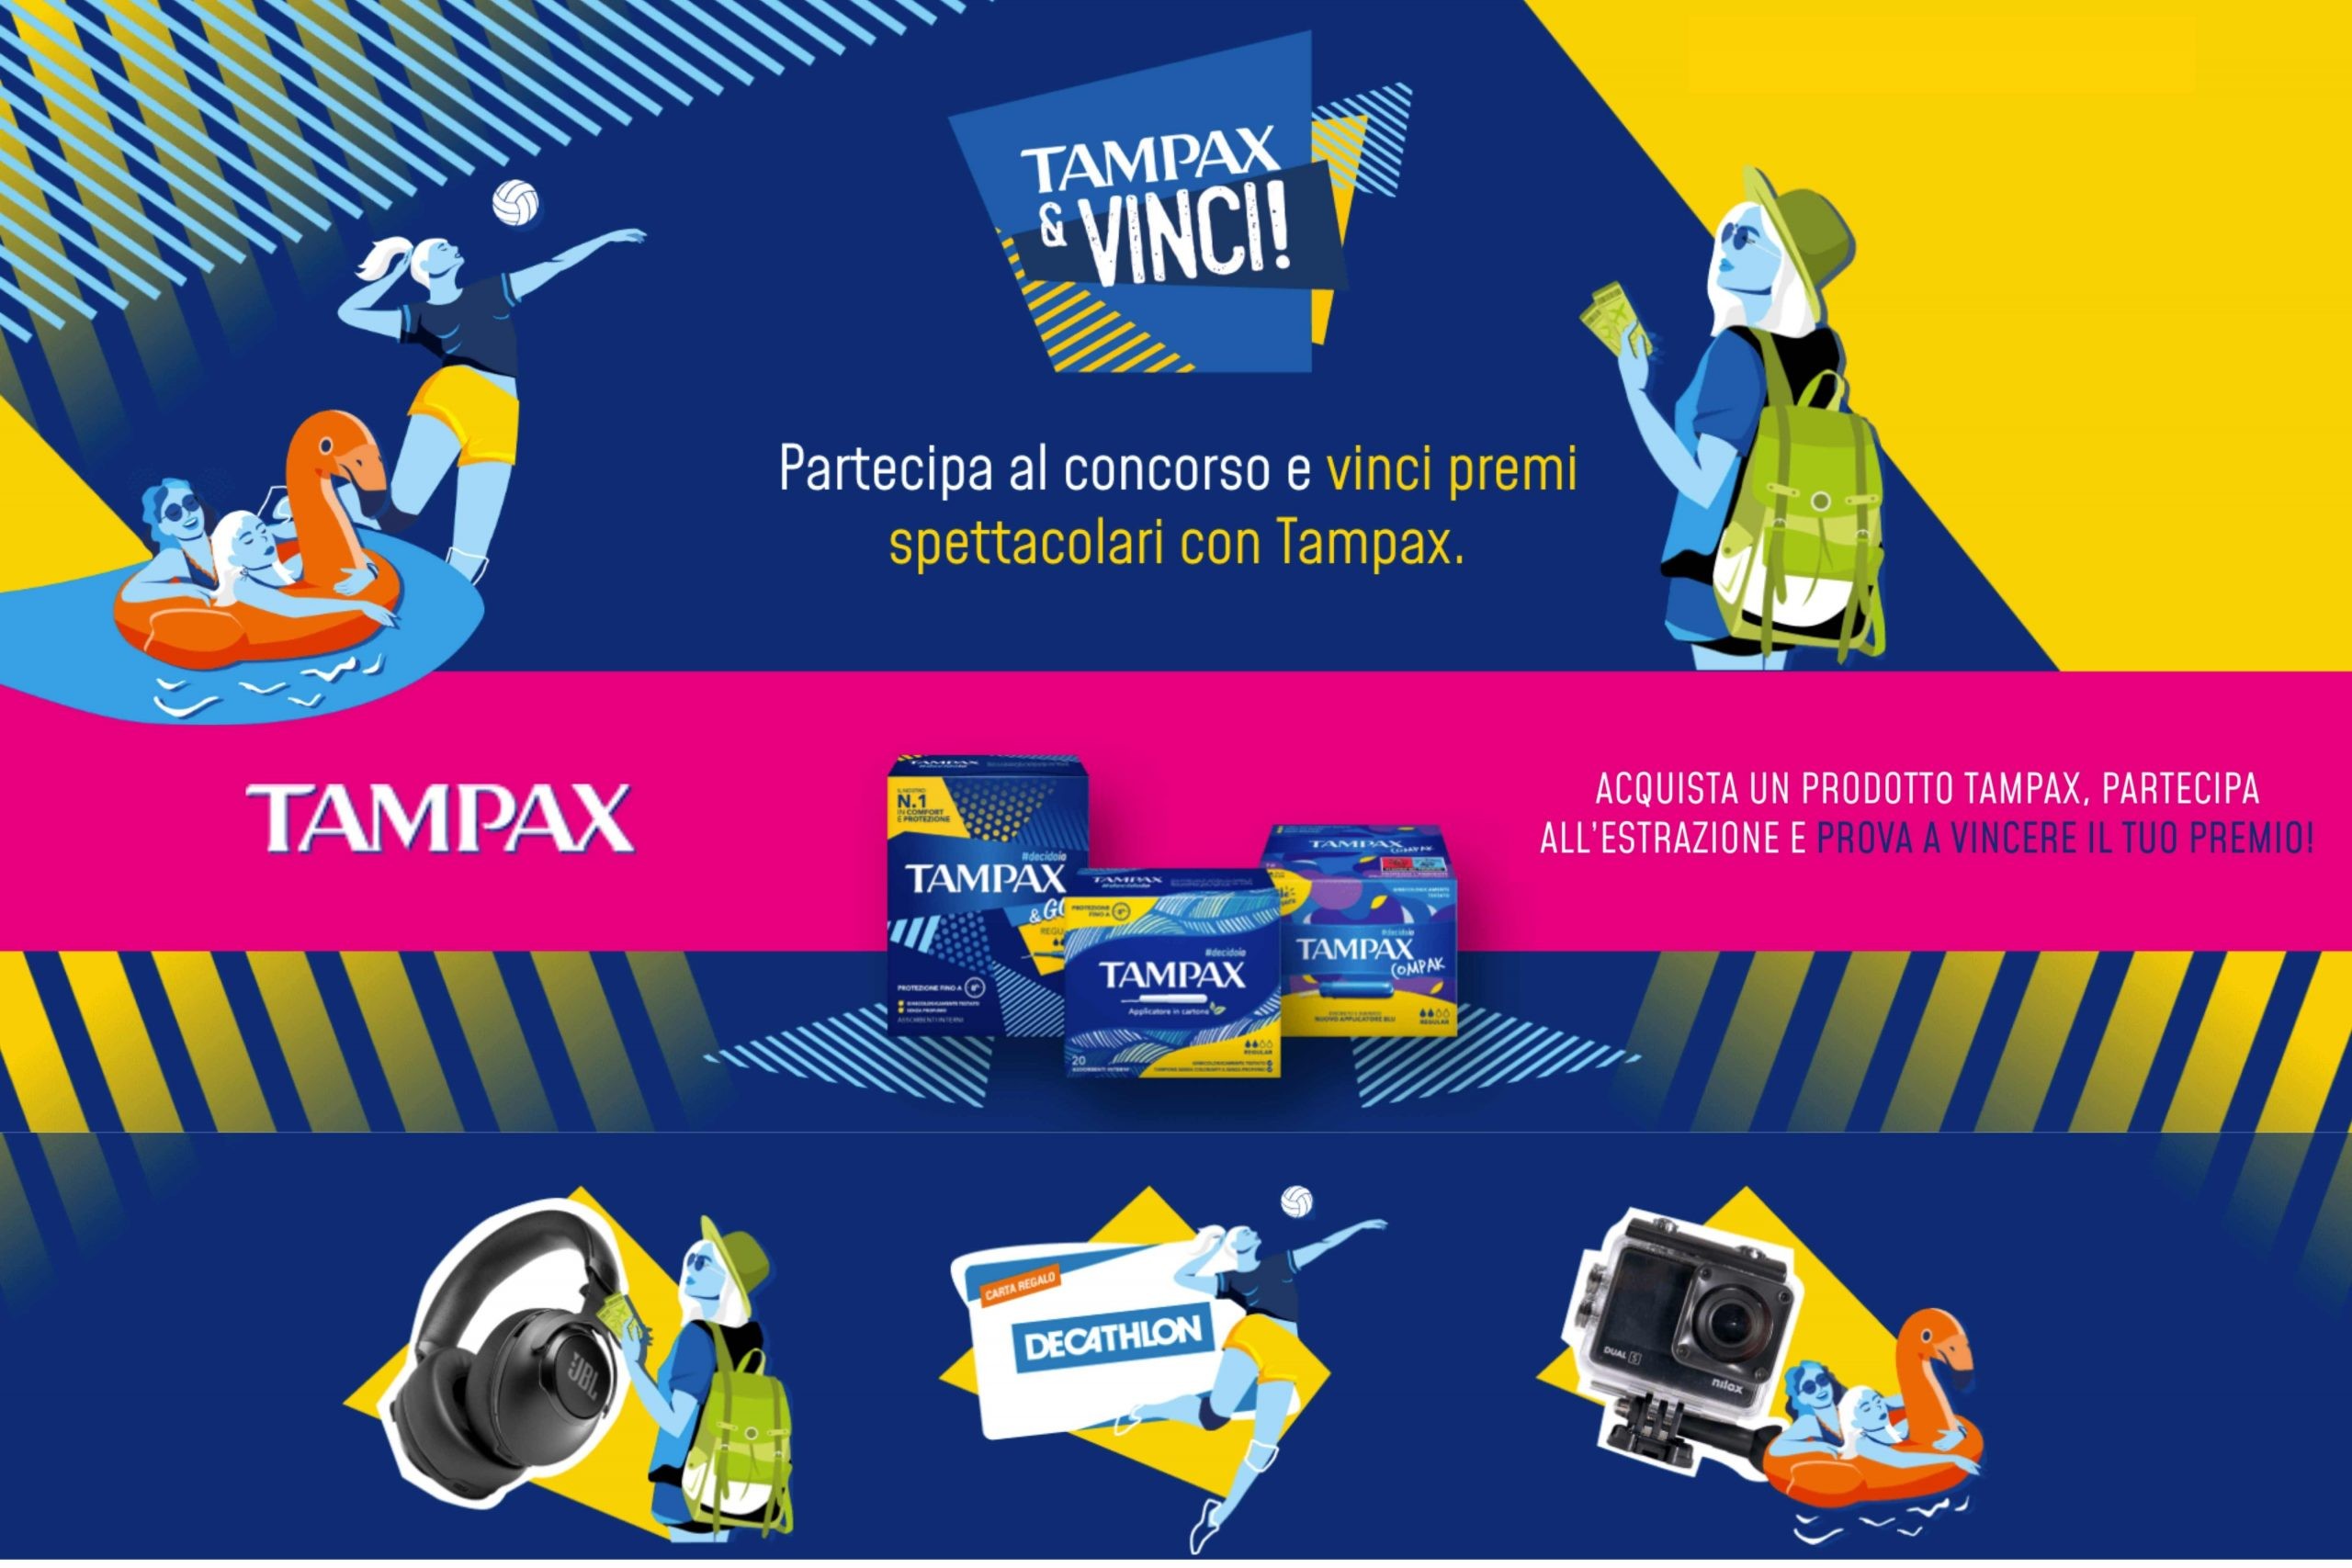 Concorso “Tampax e Vinci 4ª edizione”: vinci un premio tra cuffie JBL, Action cam Nilox o carta Decathlon a tua scelta